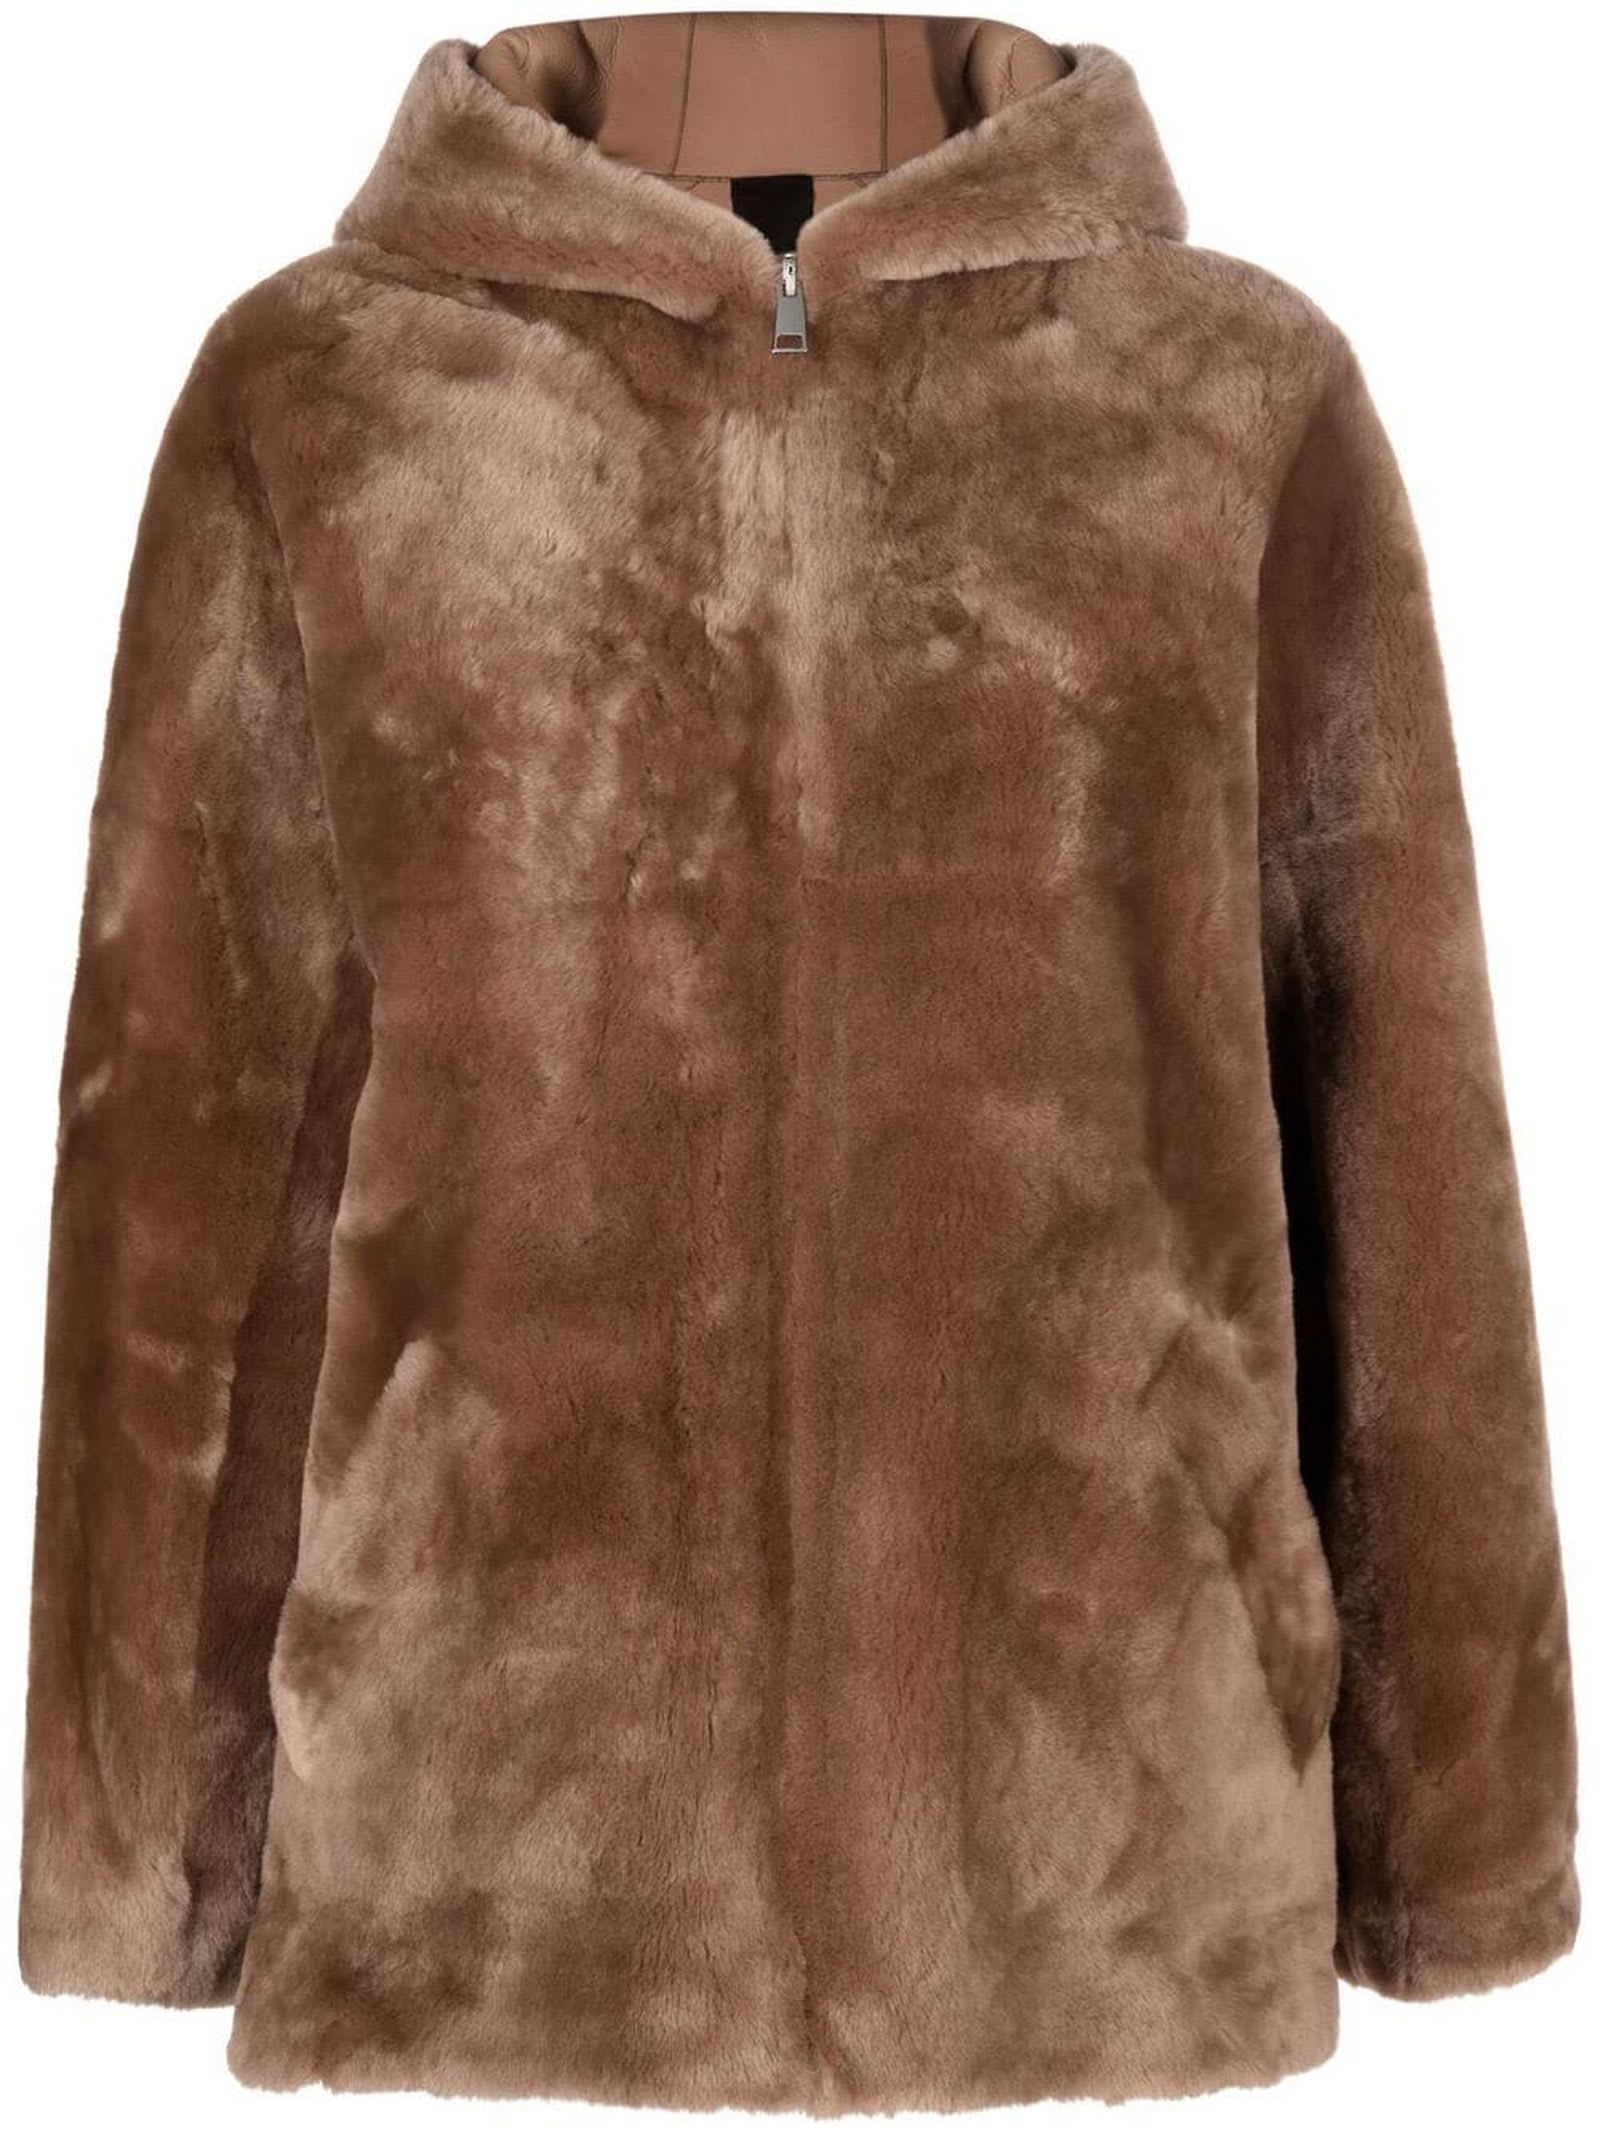 Blancha Brown Shearling Jacket